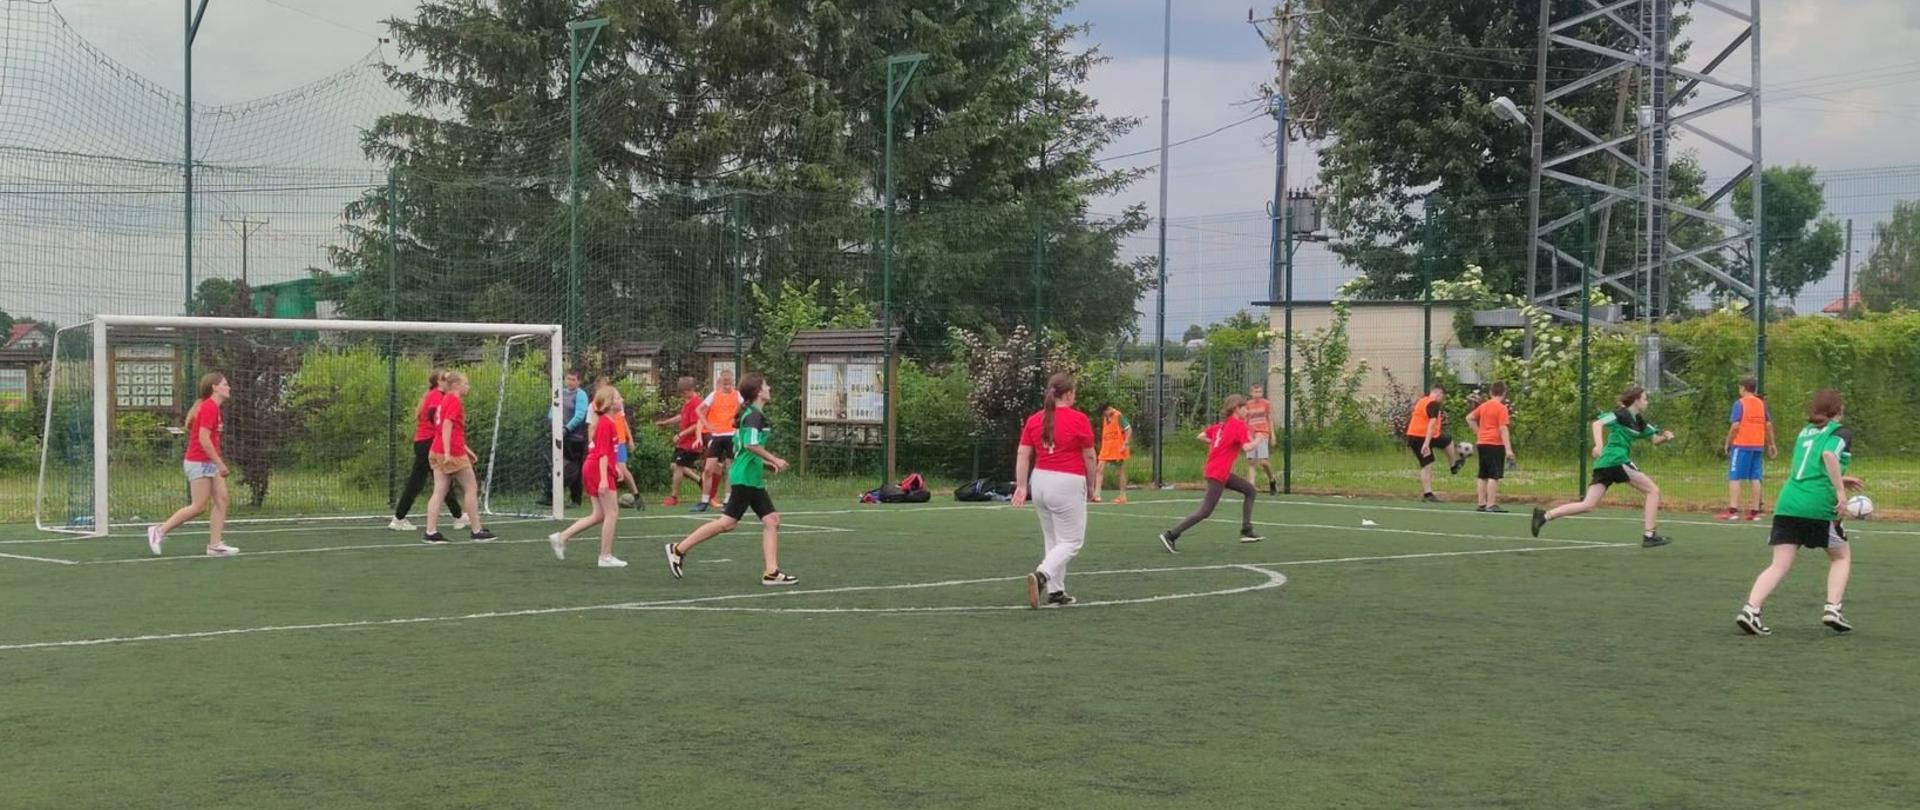 Dwie drużyny dziewcząt grające w piłkę nożną, jedna drużyna w czerwonych koszulkach, druga w zielonych koszulkach i czarnych spodenkach.